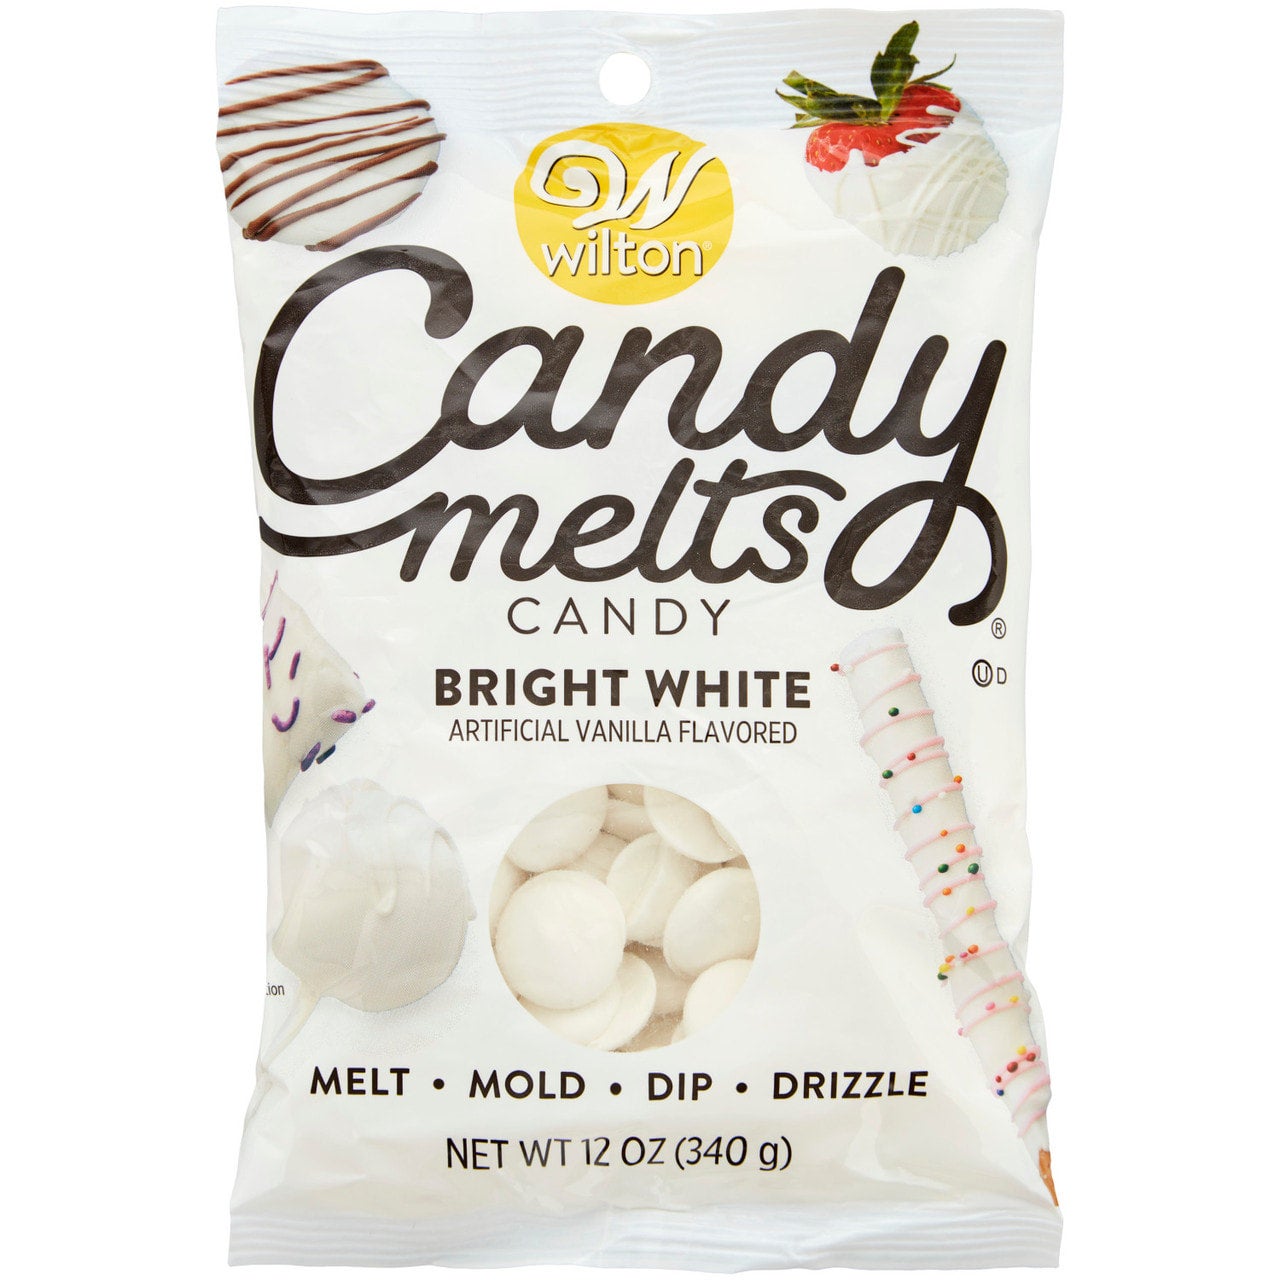 Wilton Candy Melts (9 colors/flavors)